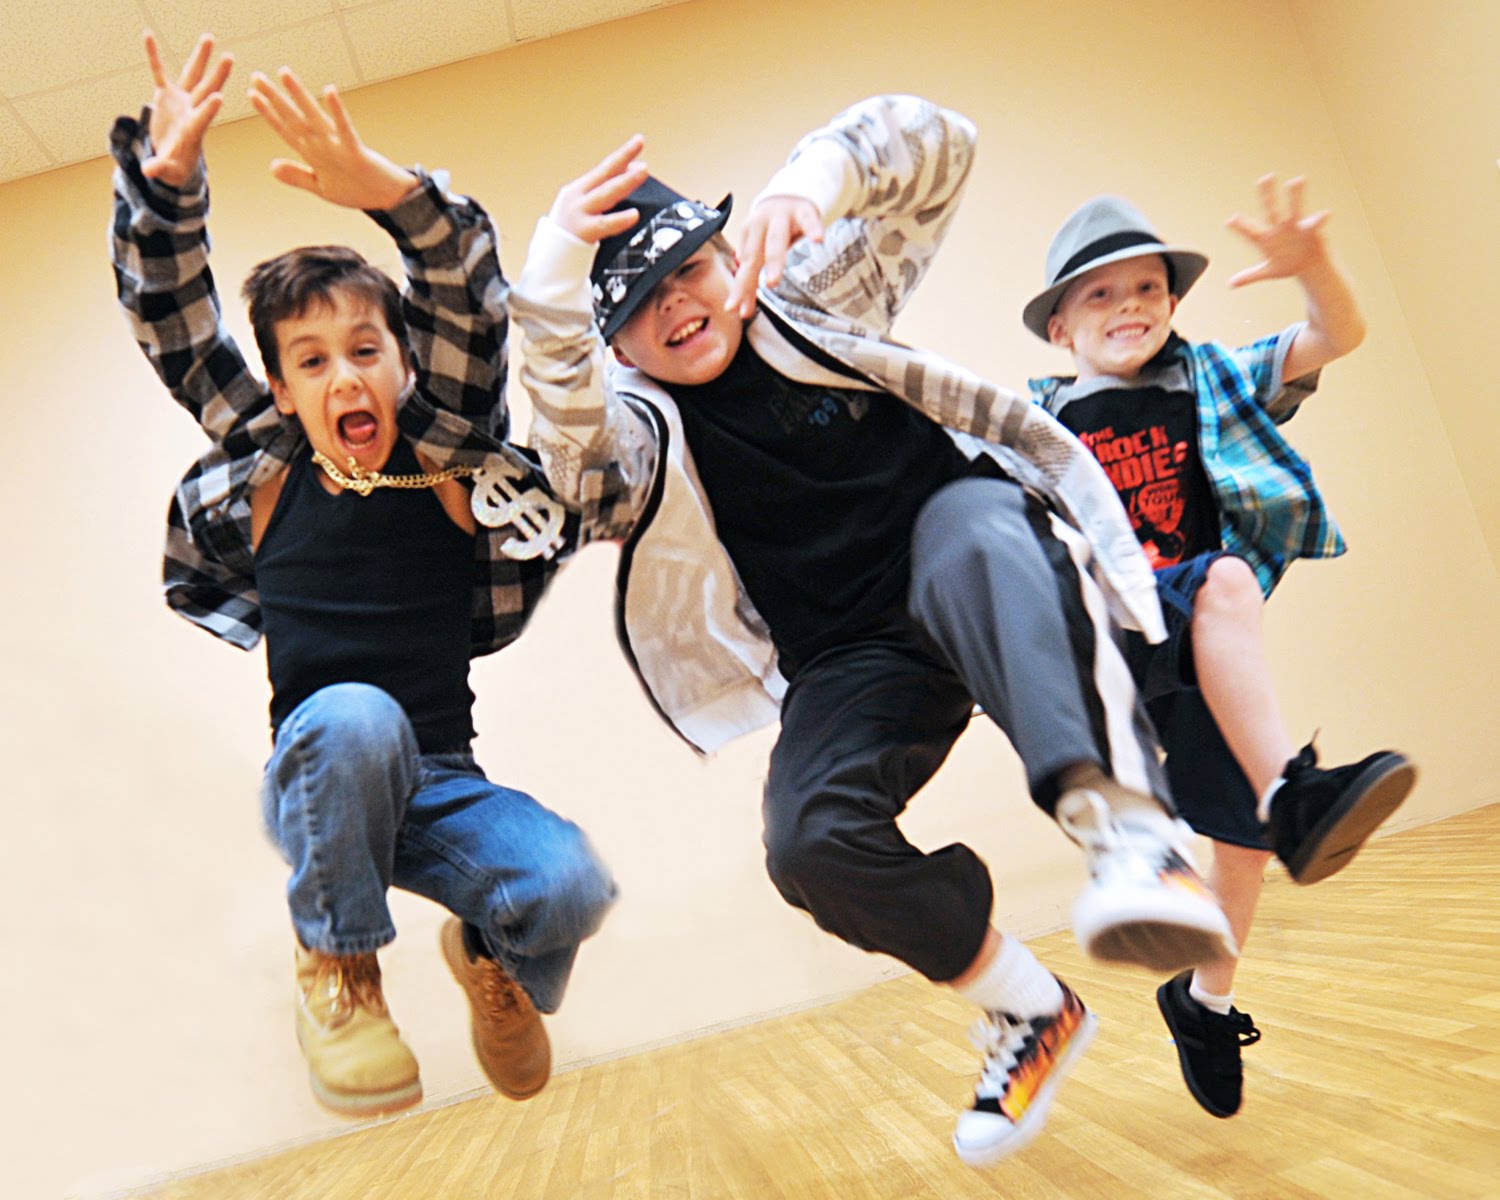 Песни для танцев для детей 9. Хип хоп дети. Танцы хип хоп. Хип-хоп танцы для детей. Детские современные танцы.